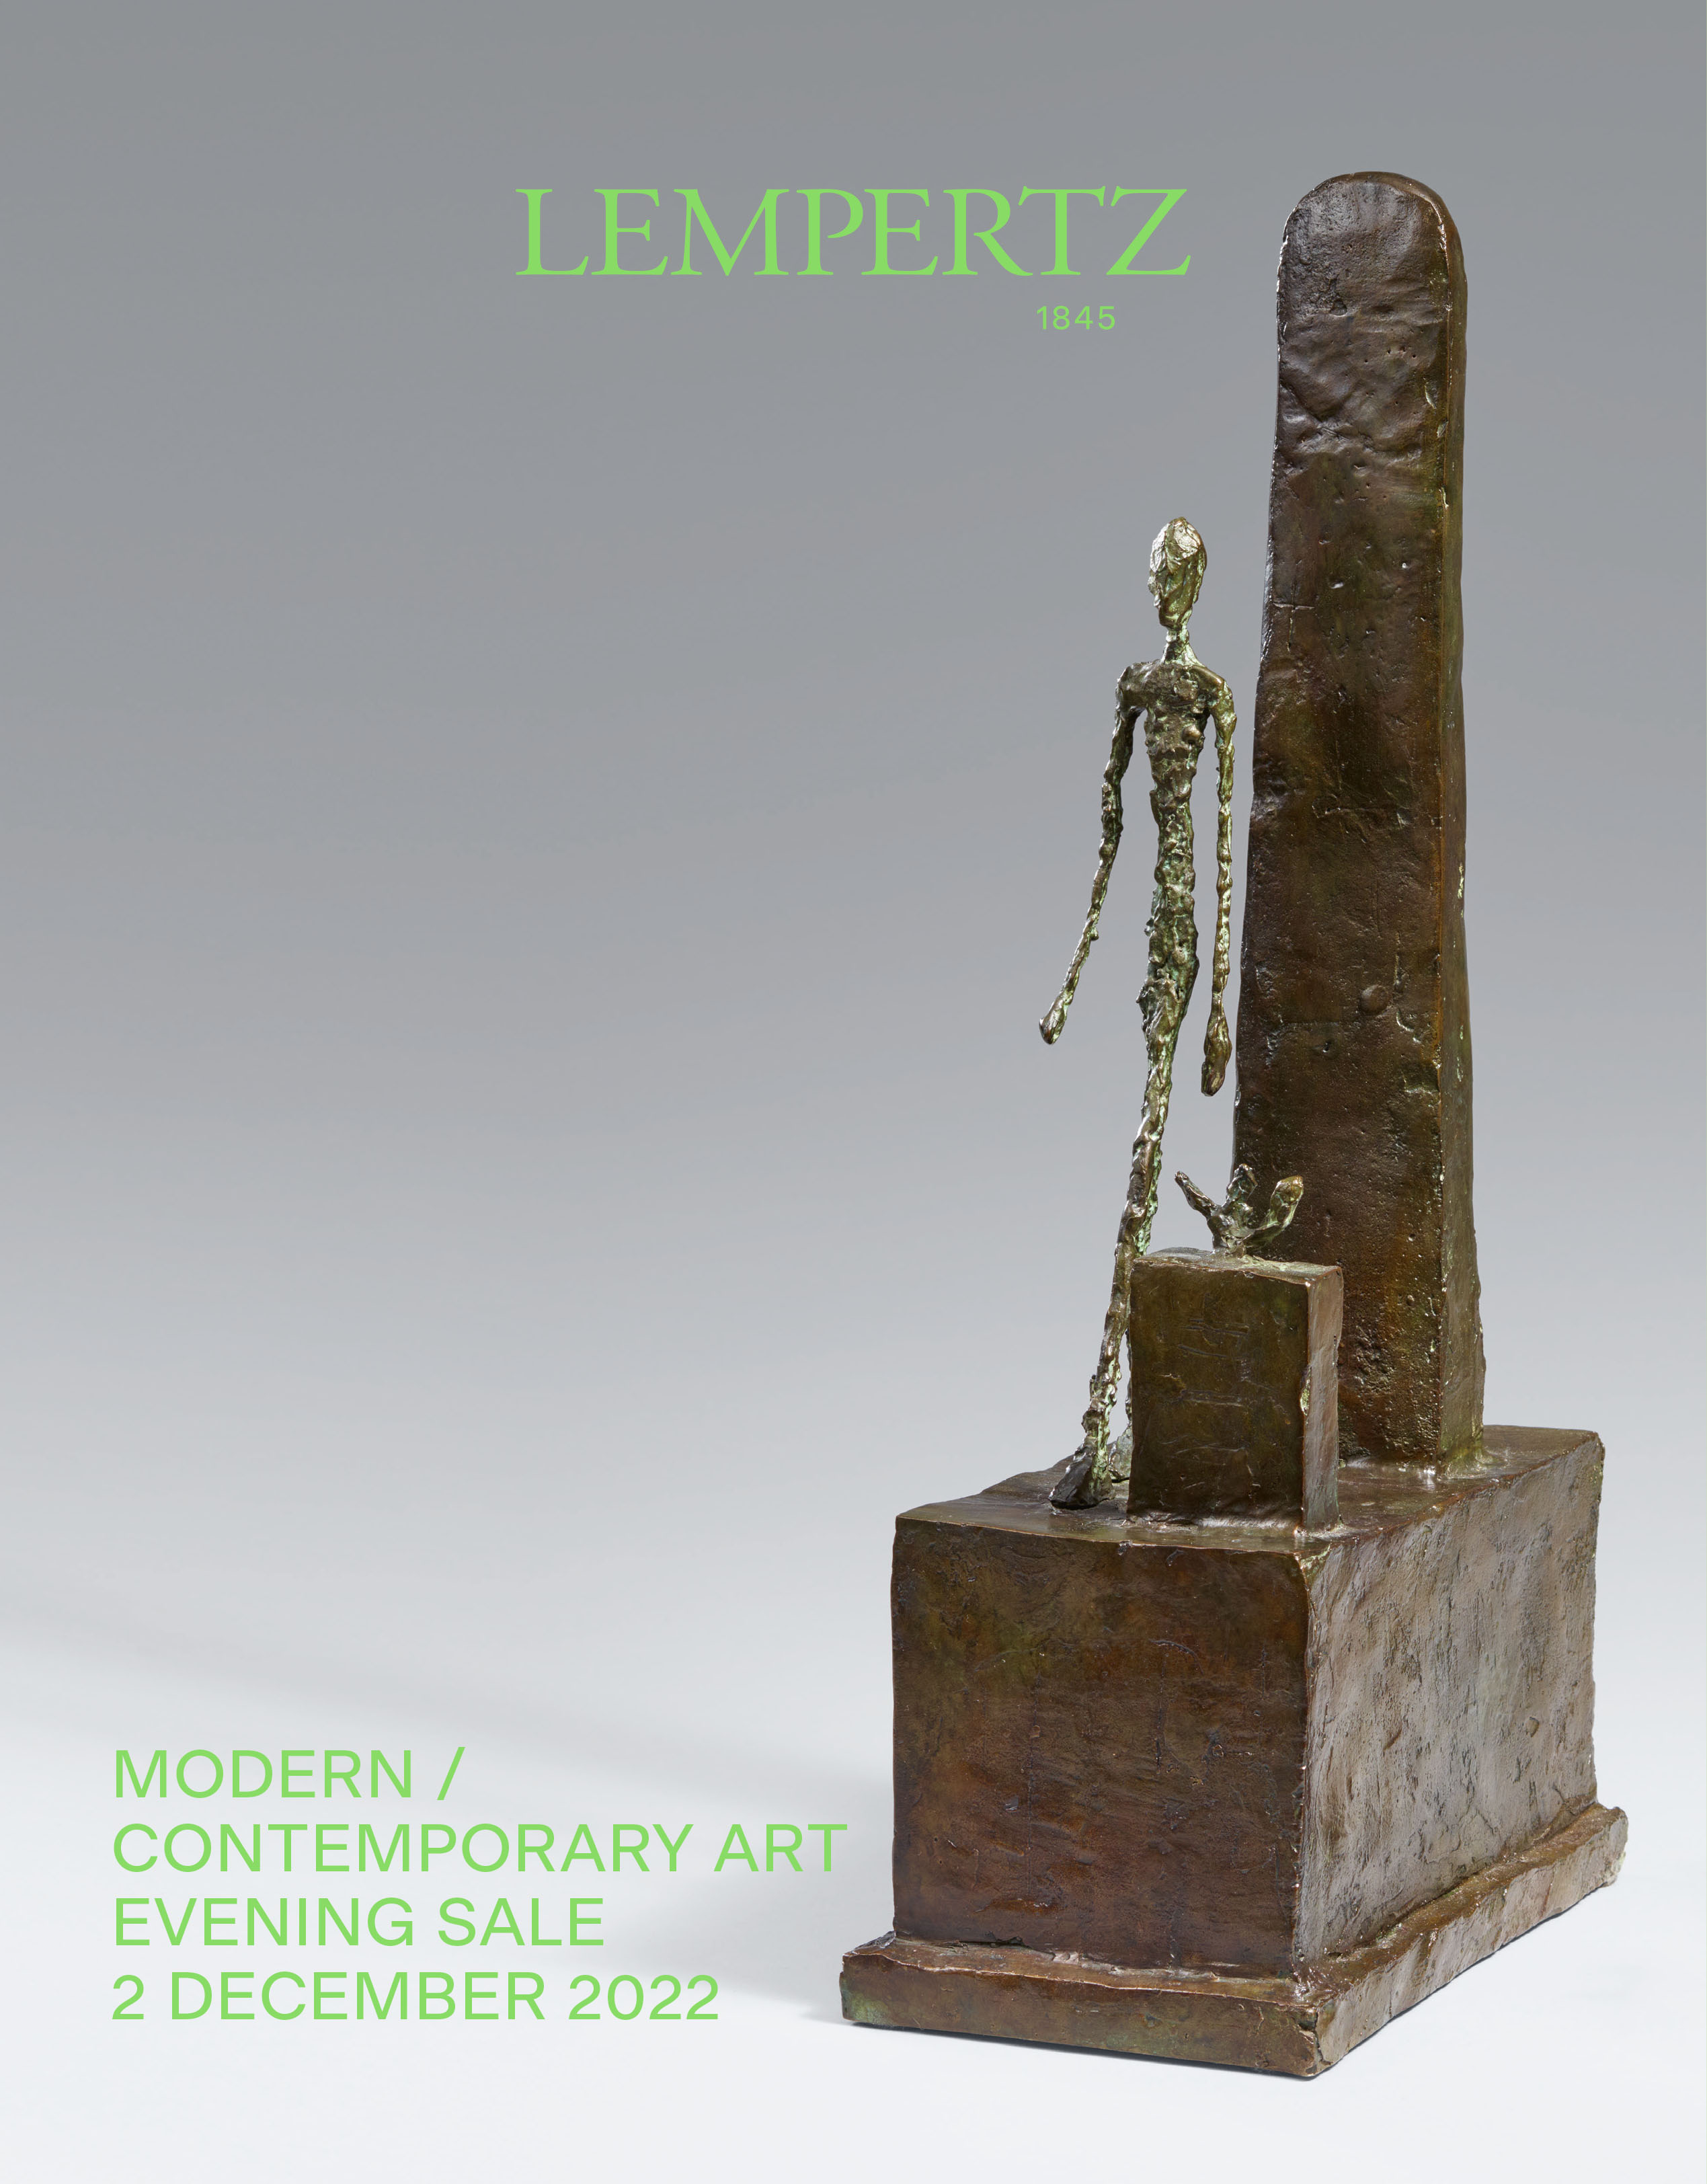 Auktionskatalog - Evening Sale - Moderne und Zeigenössische Kunst - Online Katalog - Auktion 1211 – Ersteigern Sie hochwertige Kunst in der nächsten Lempertz-Auktion!